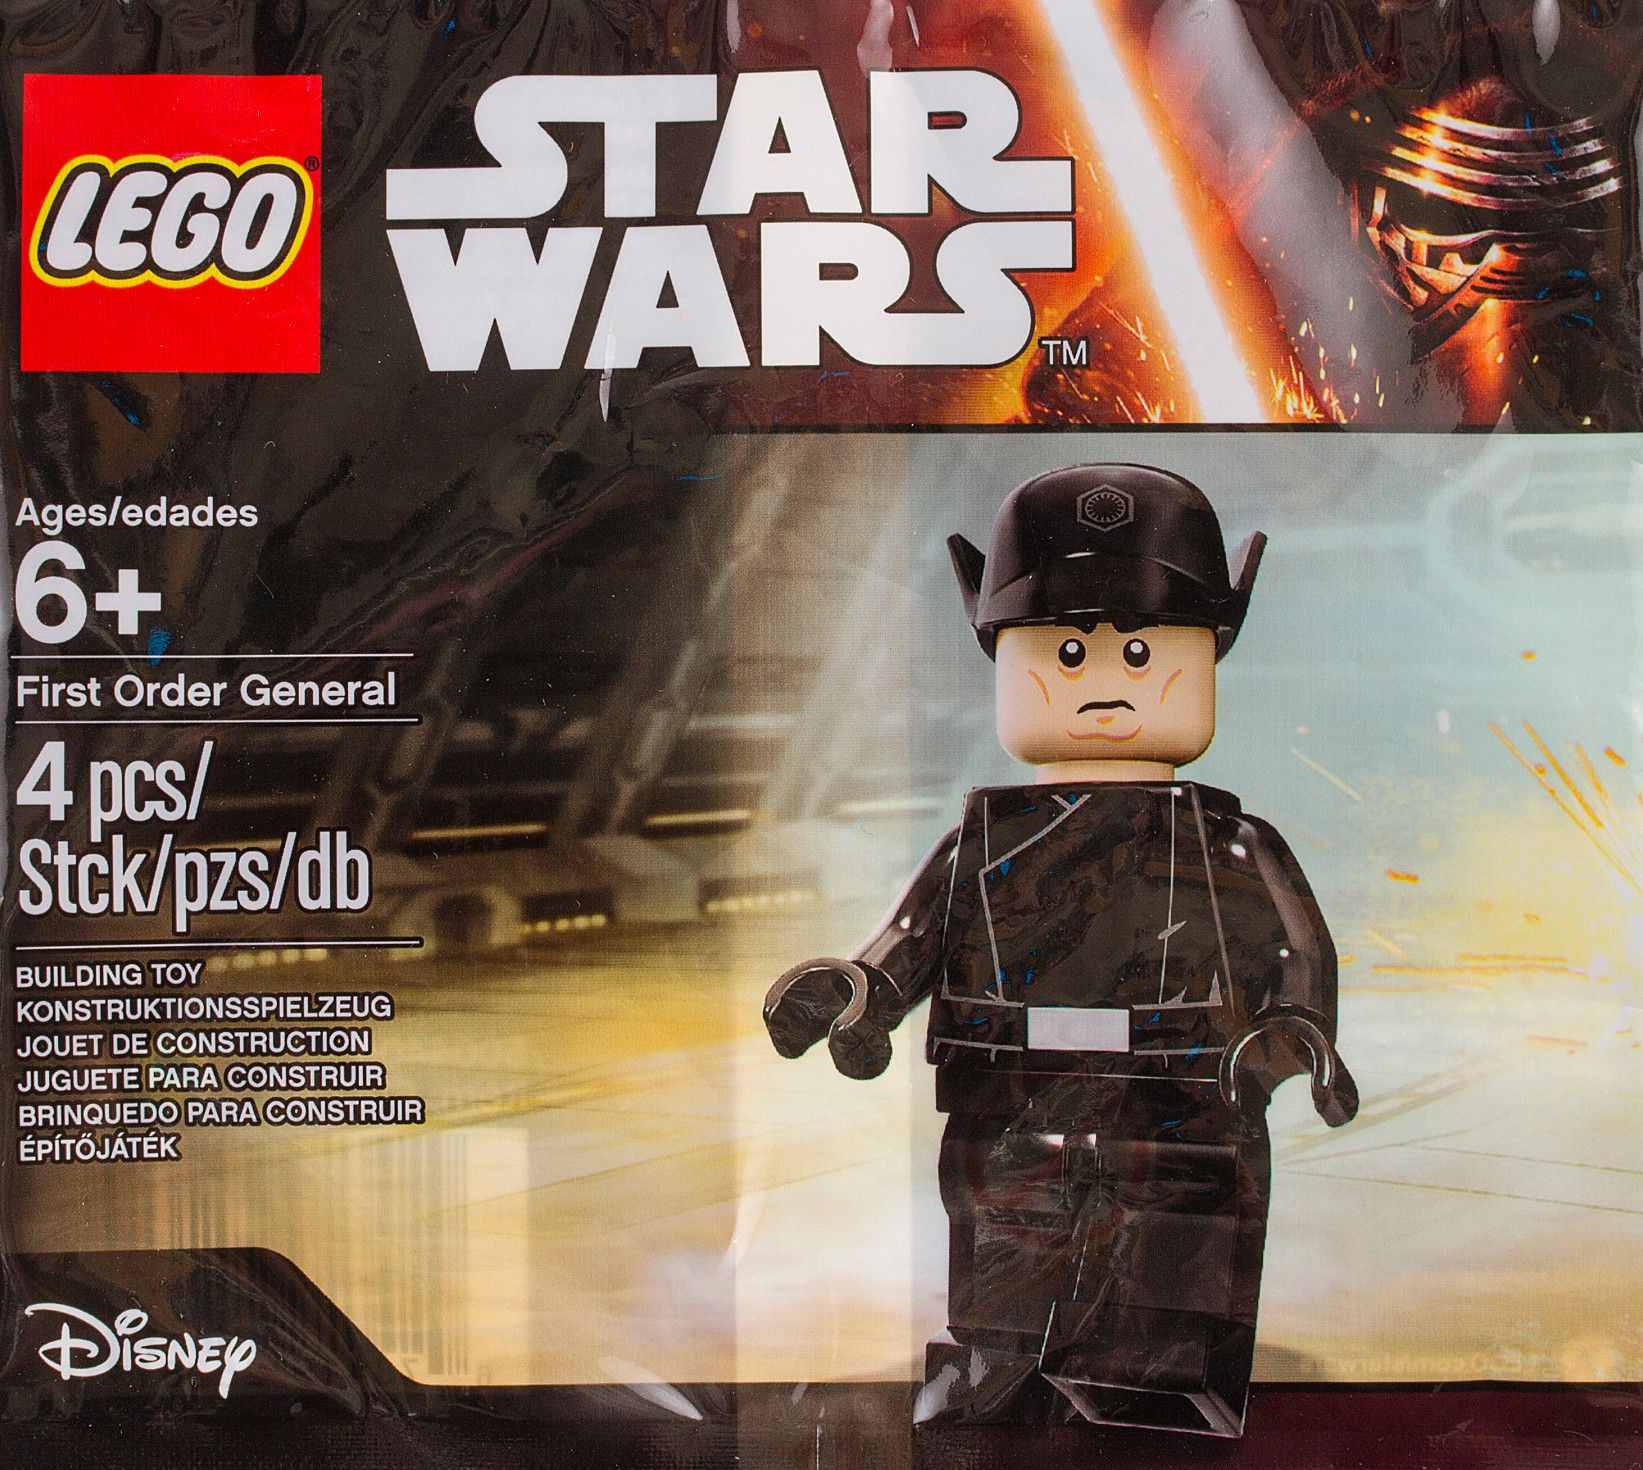 LEGO Star Wars 5004406 LEGO® Star Wars™ First Order General™ LEGO_5004406_alt1_x.jpg